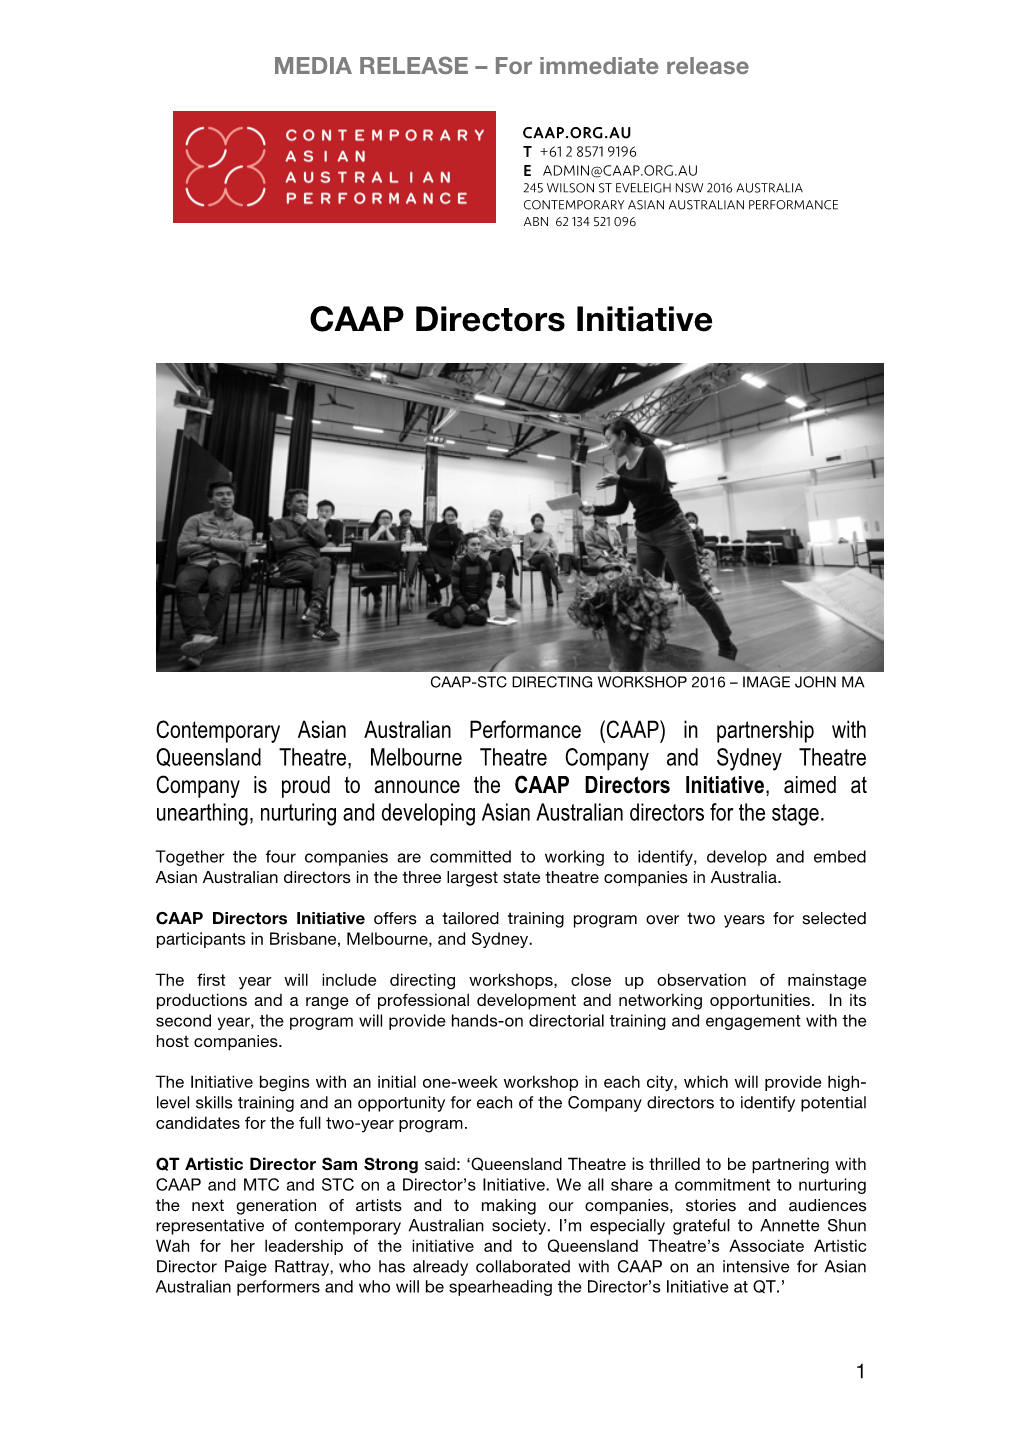 CAAP DIRECTORS INITIATIVE Media Release FINAL